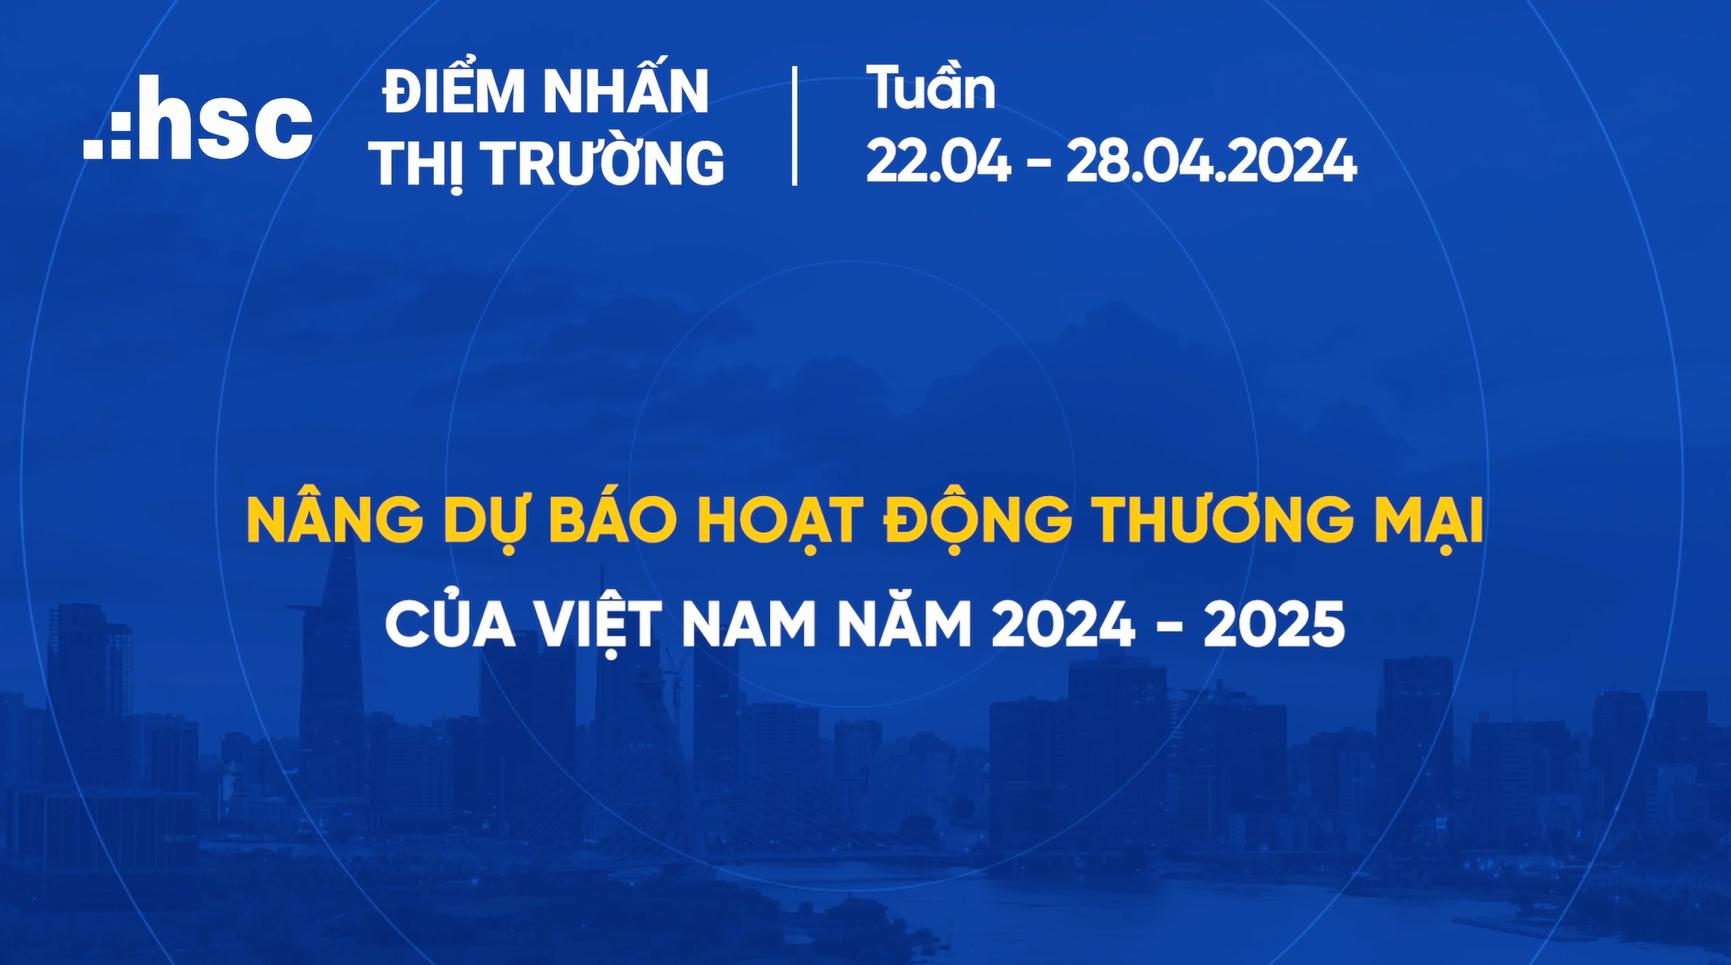 Nâng dự báo hoạt động thương mại của Việt Nam năm 2024 - 2025 | Điểm nhấn thị trường 22.04 - 28.04.2024